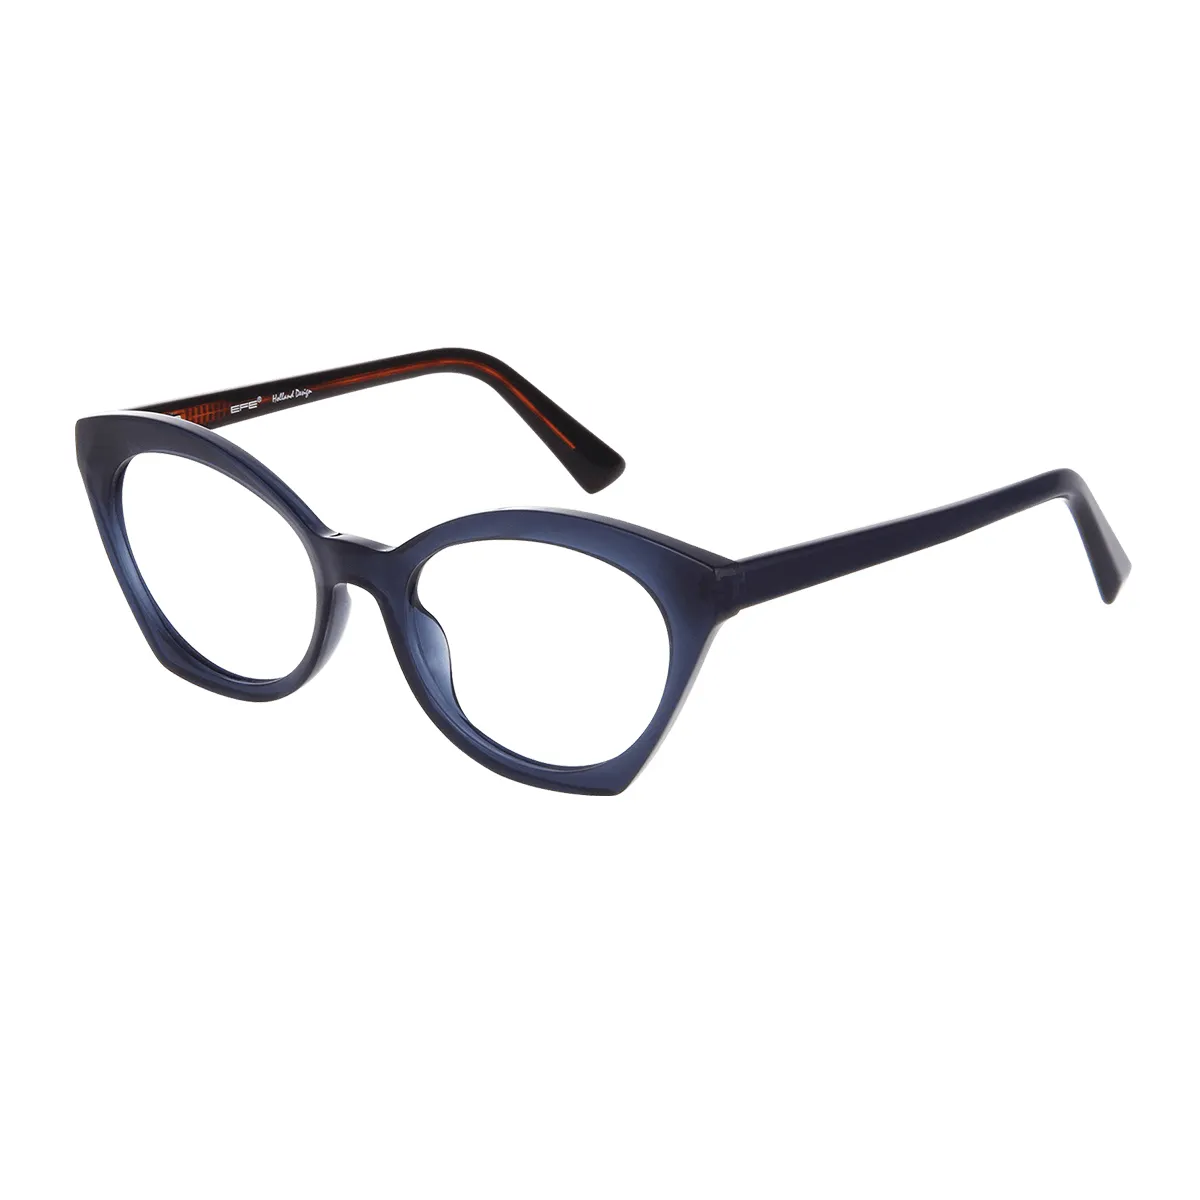 Newby - Cat-eye Blue Glasses for Women